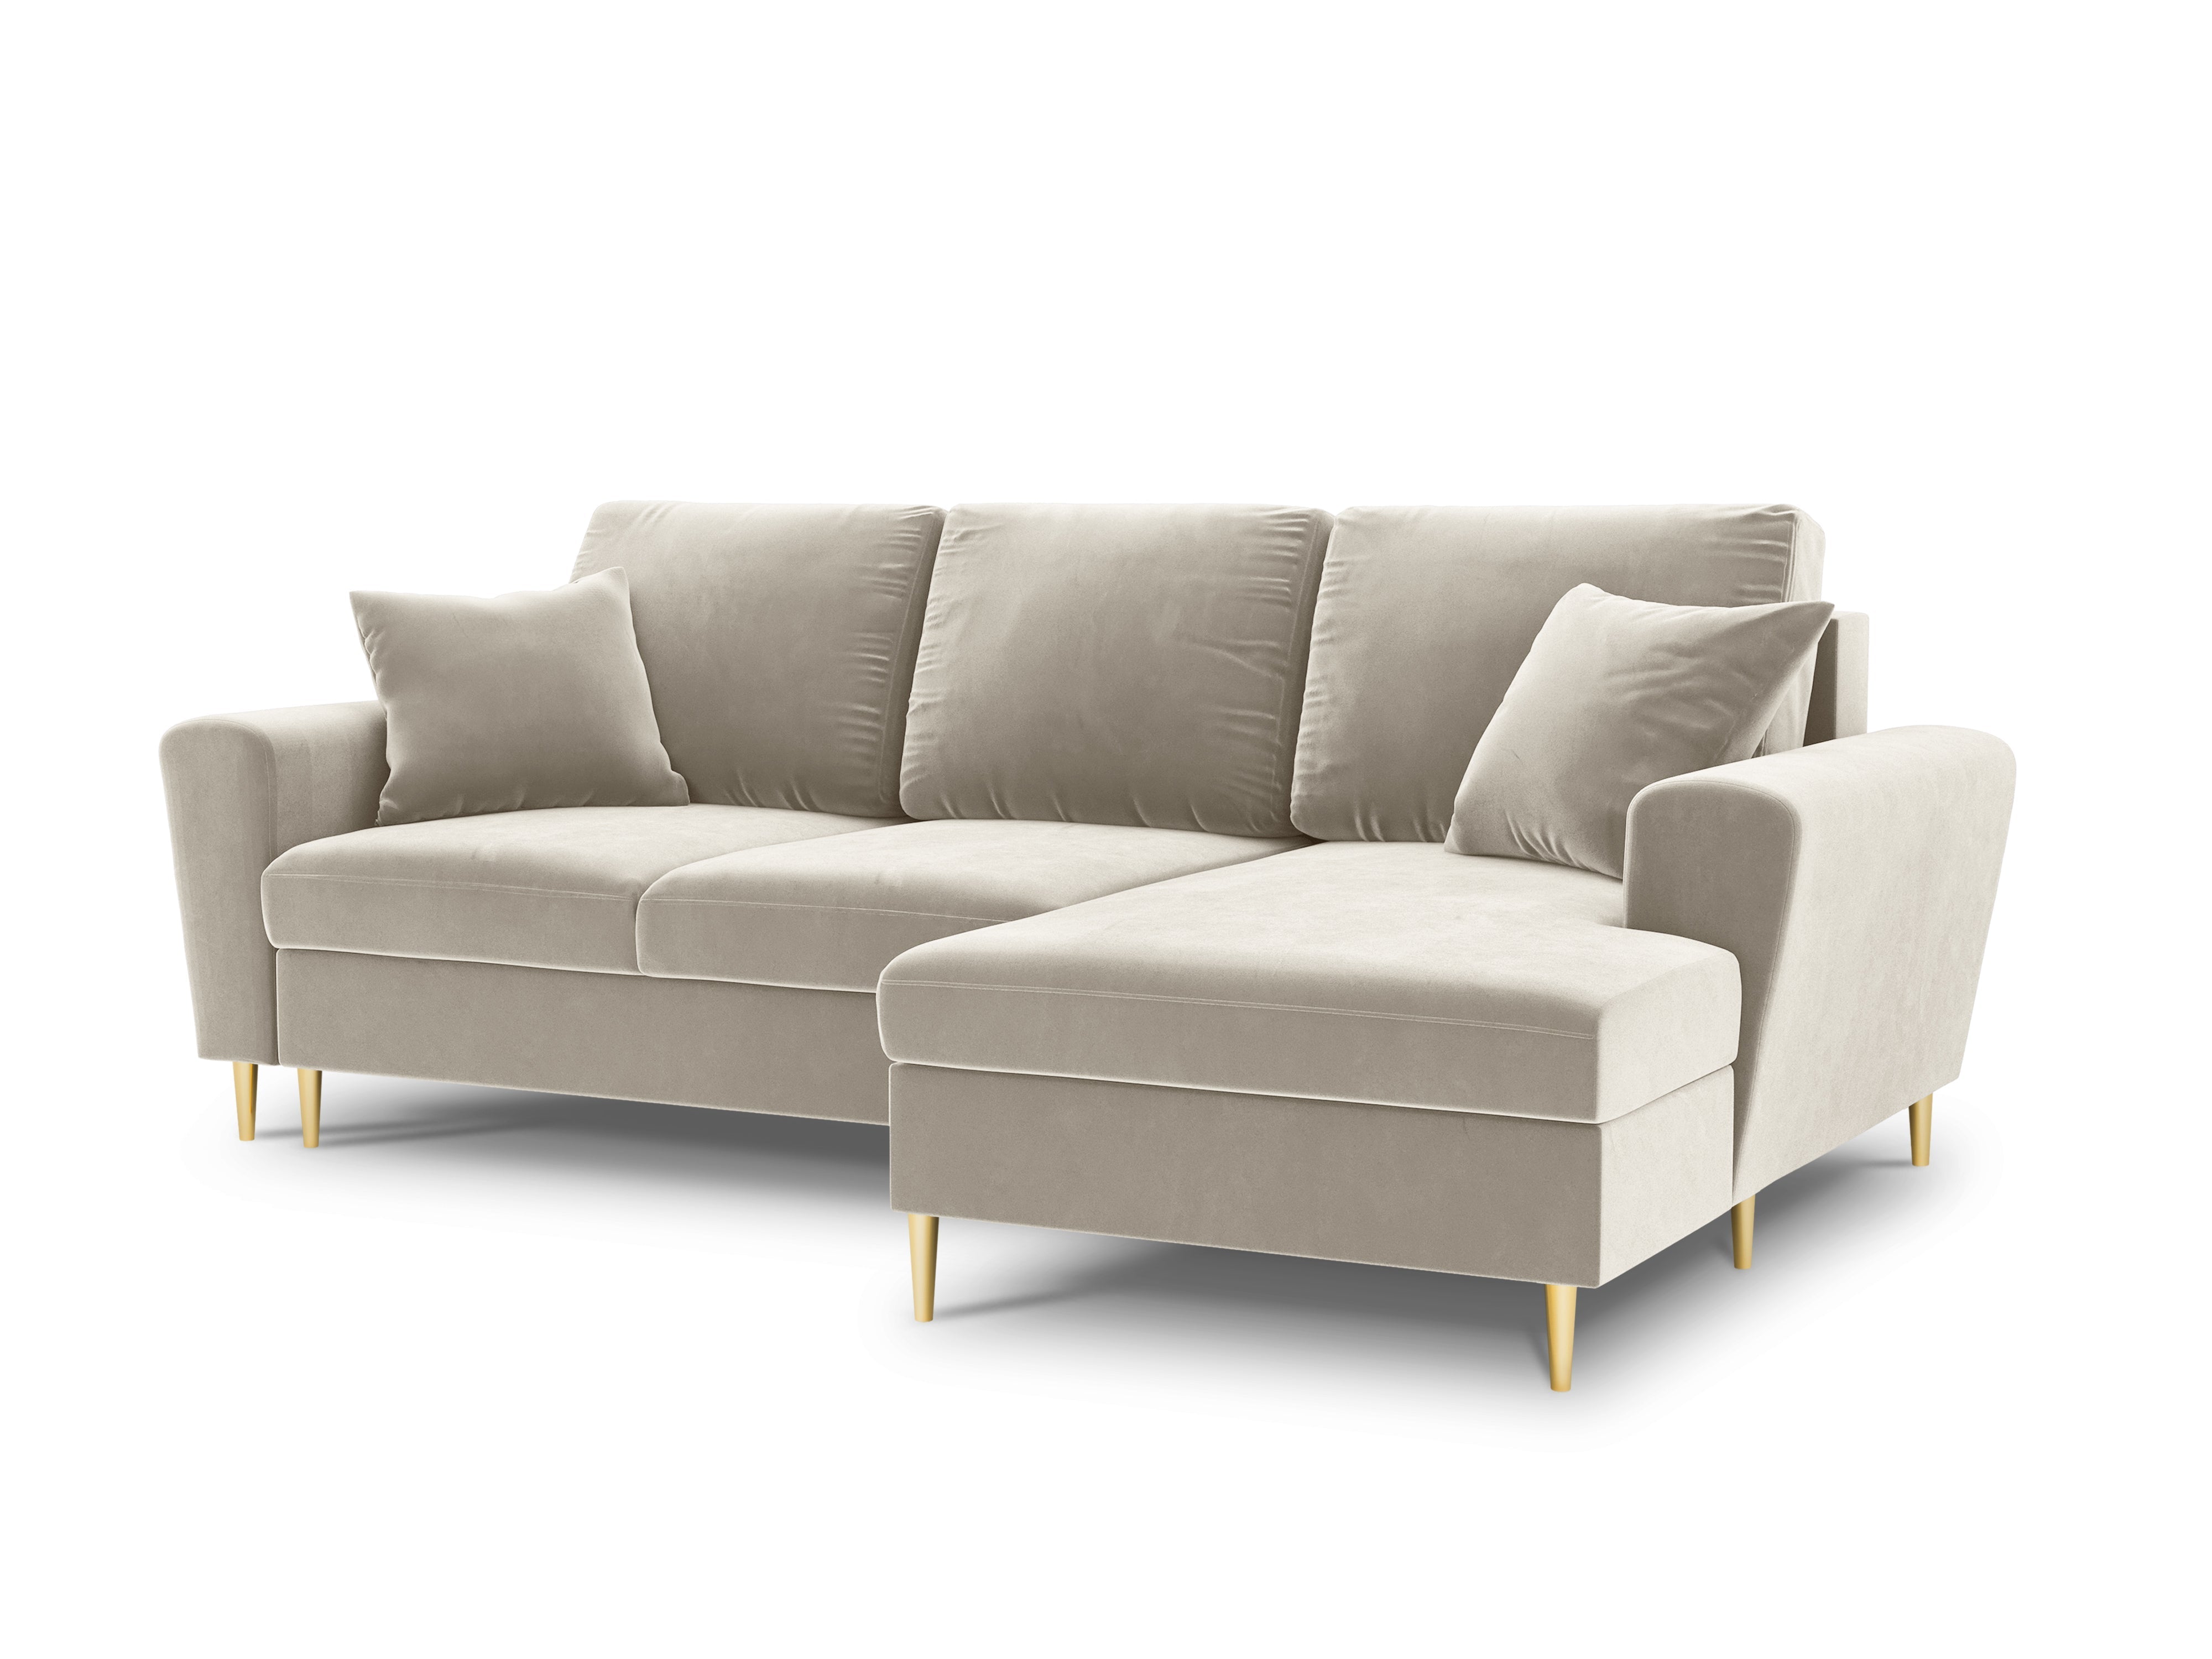 Velvet beige sofa with glossy